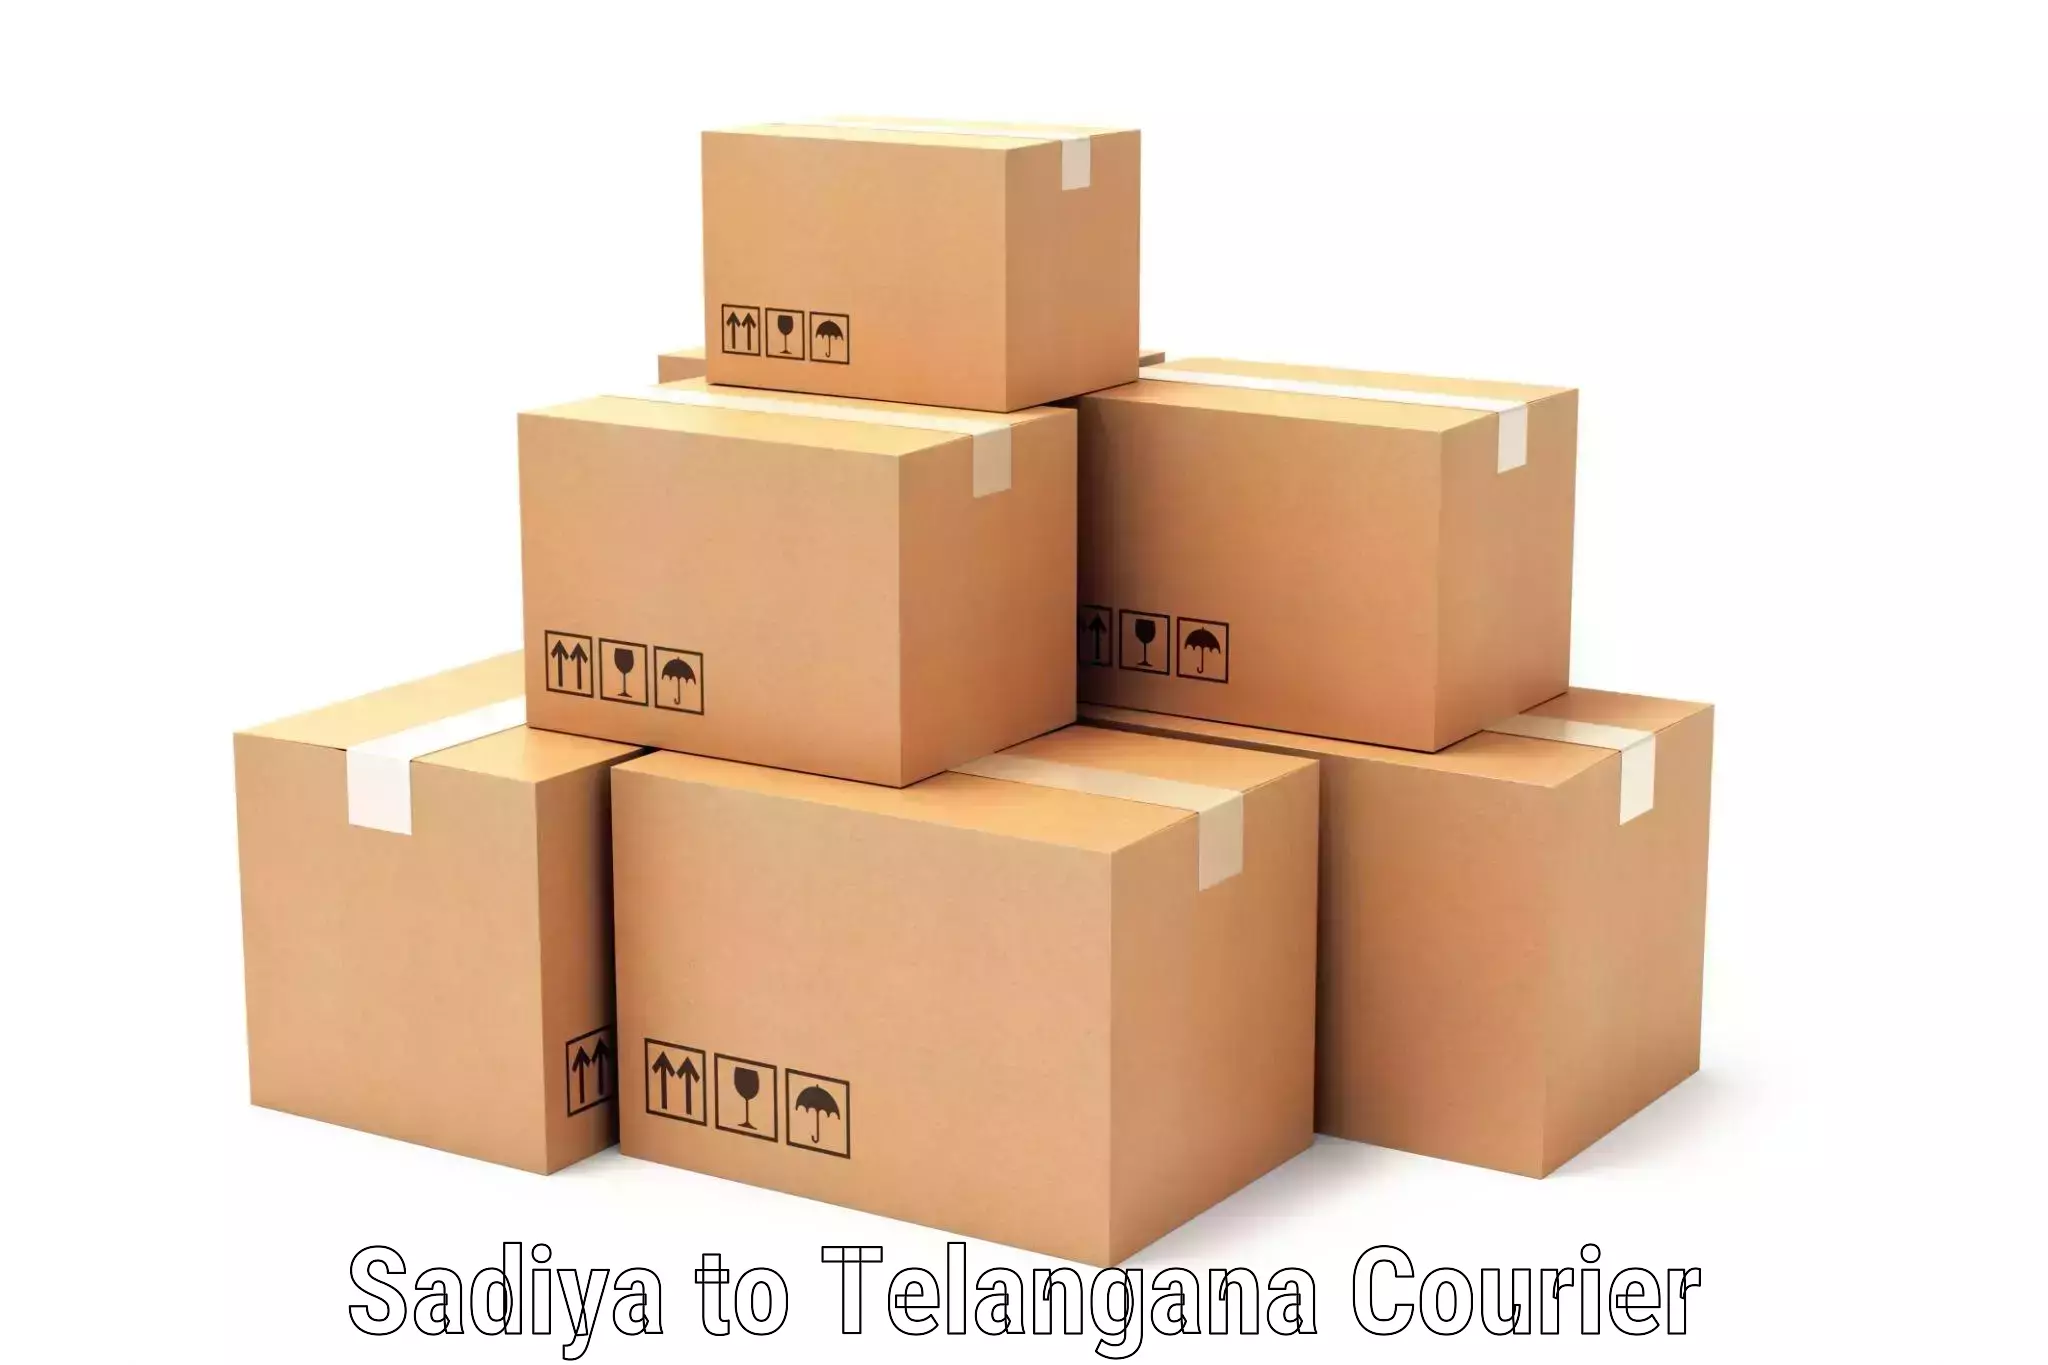 Flexible shipping options Sadiya to Moinabad